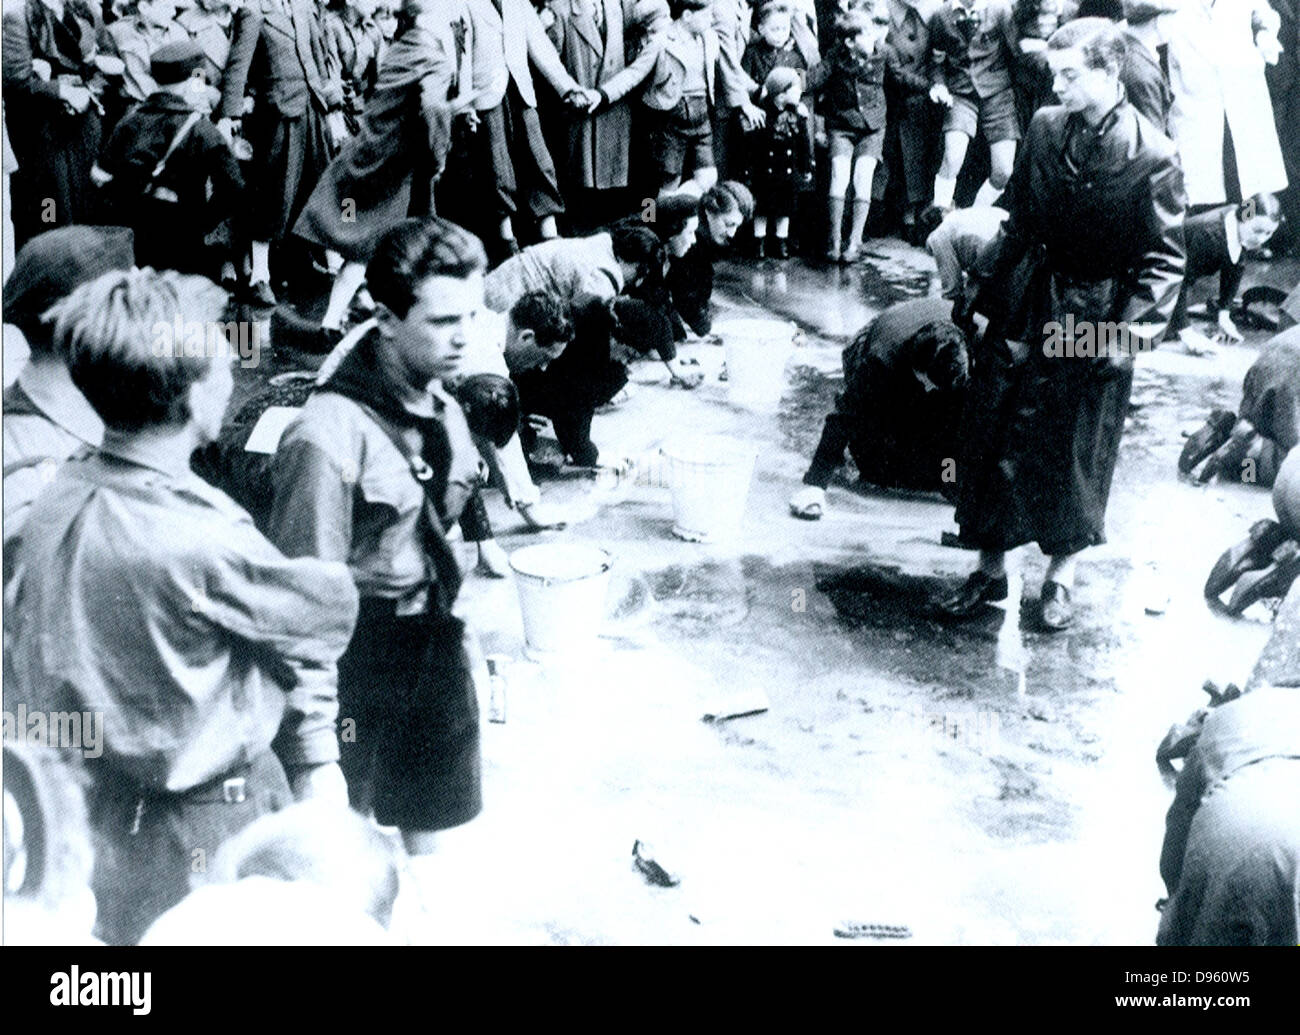 Les juifs autrichiens contraints de laver une rue à Vienne à la suite de l'Anschluss (l'Annexion allemande de l'Autriche en 1938) Banque D'Images